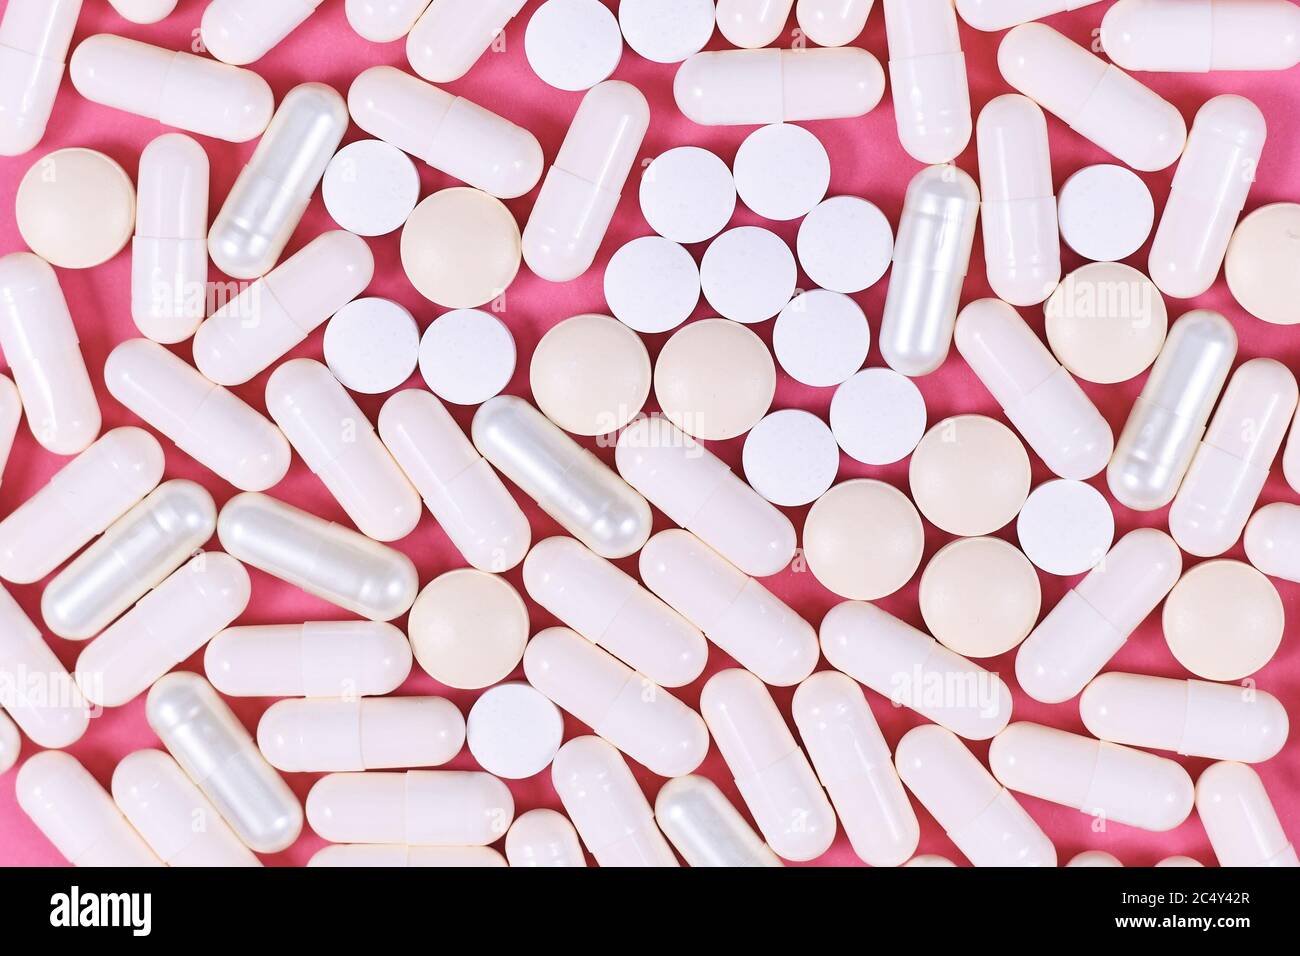 Weiße Kapsuel und harte Pillen auf rosa Hintergrund Stockfoto